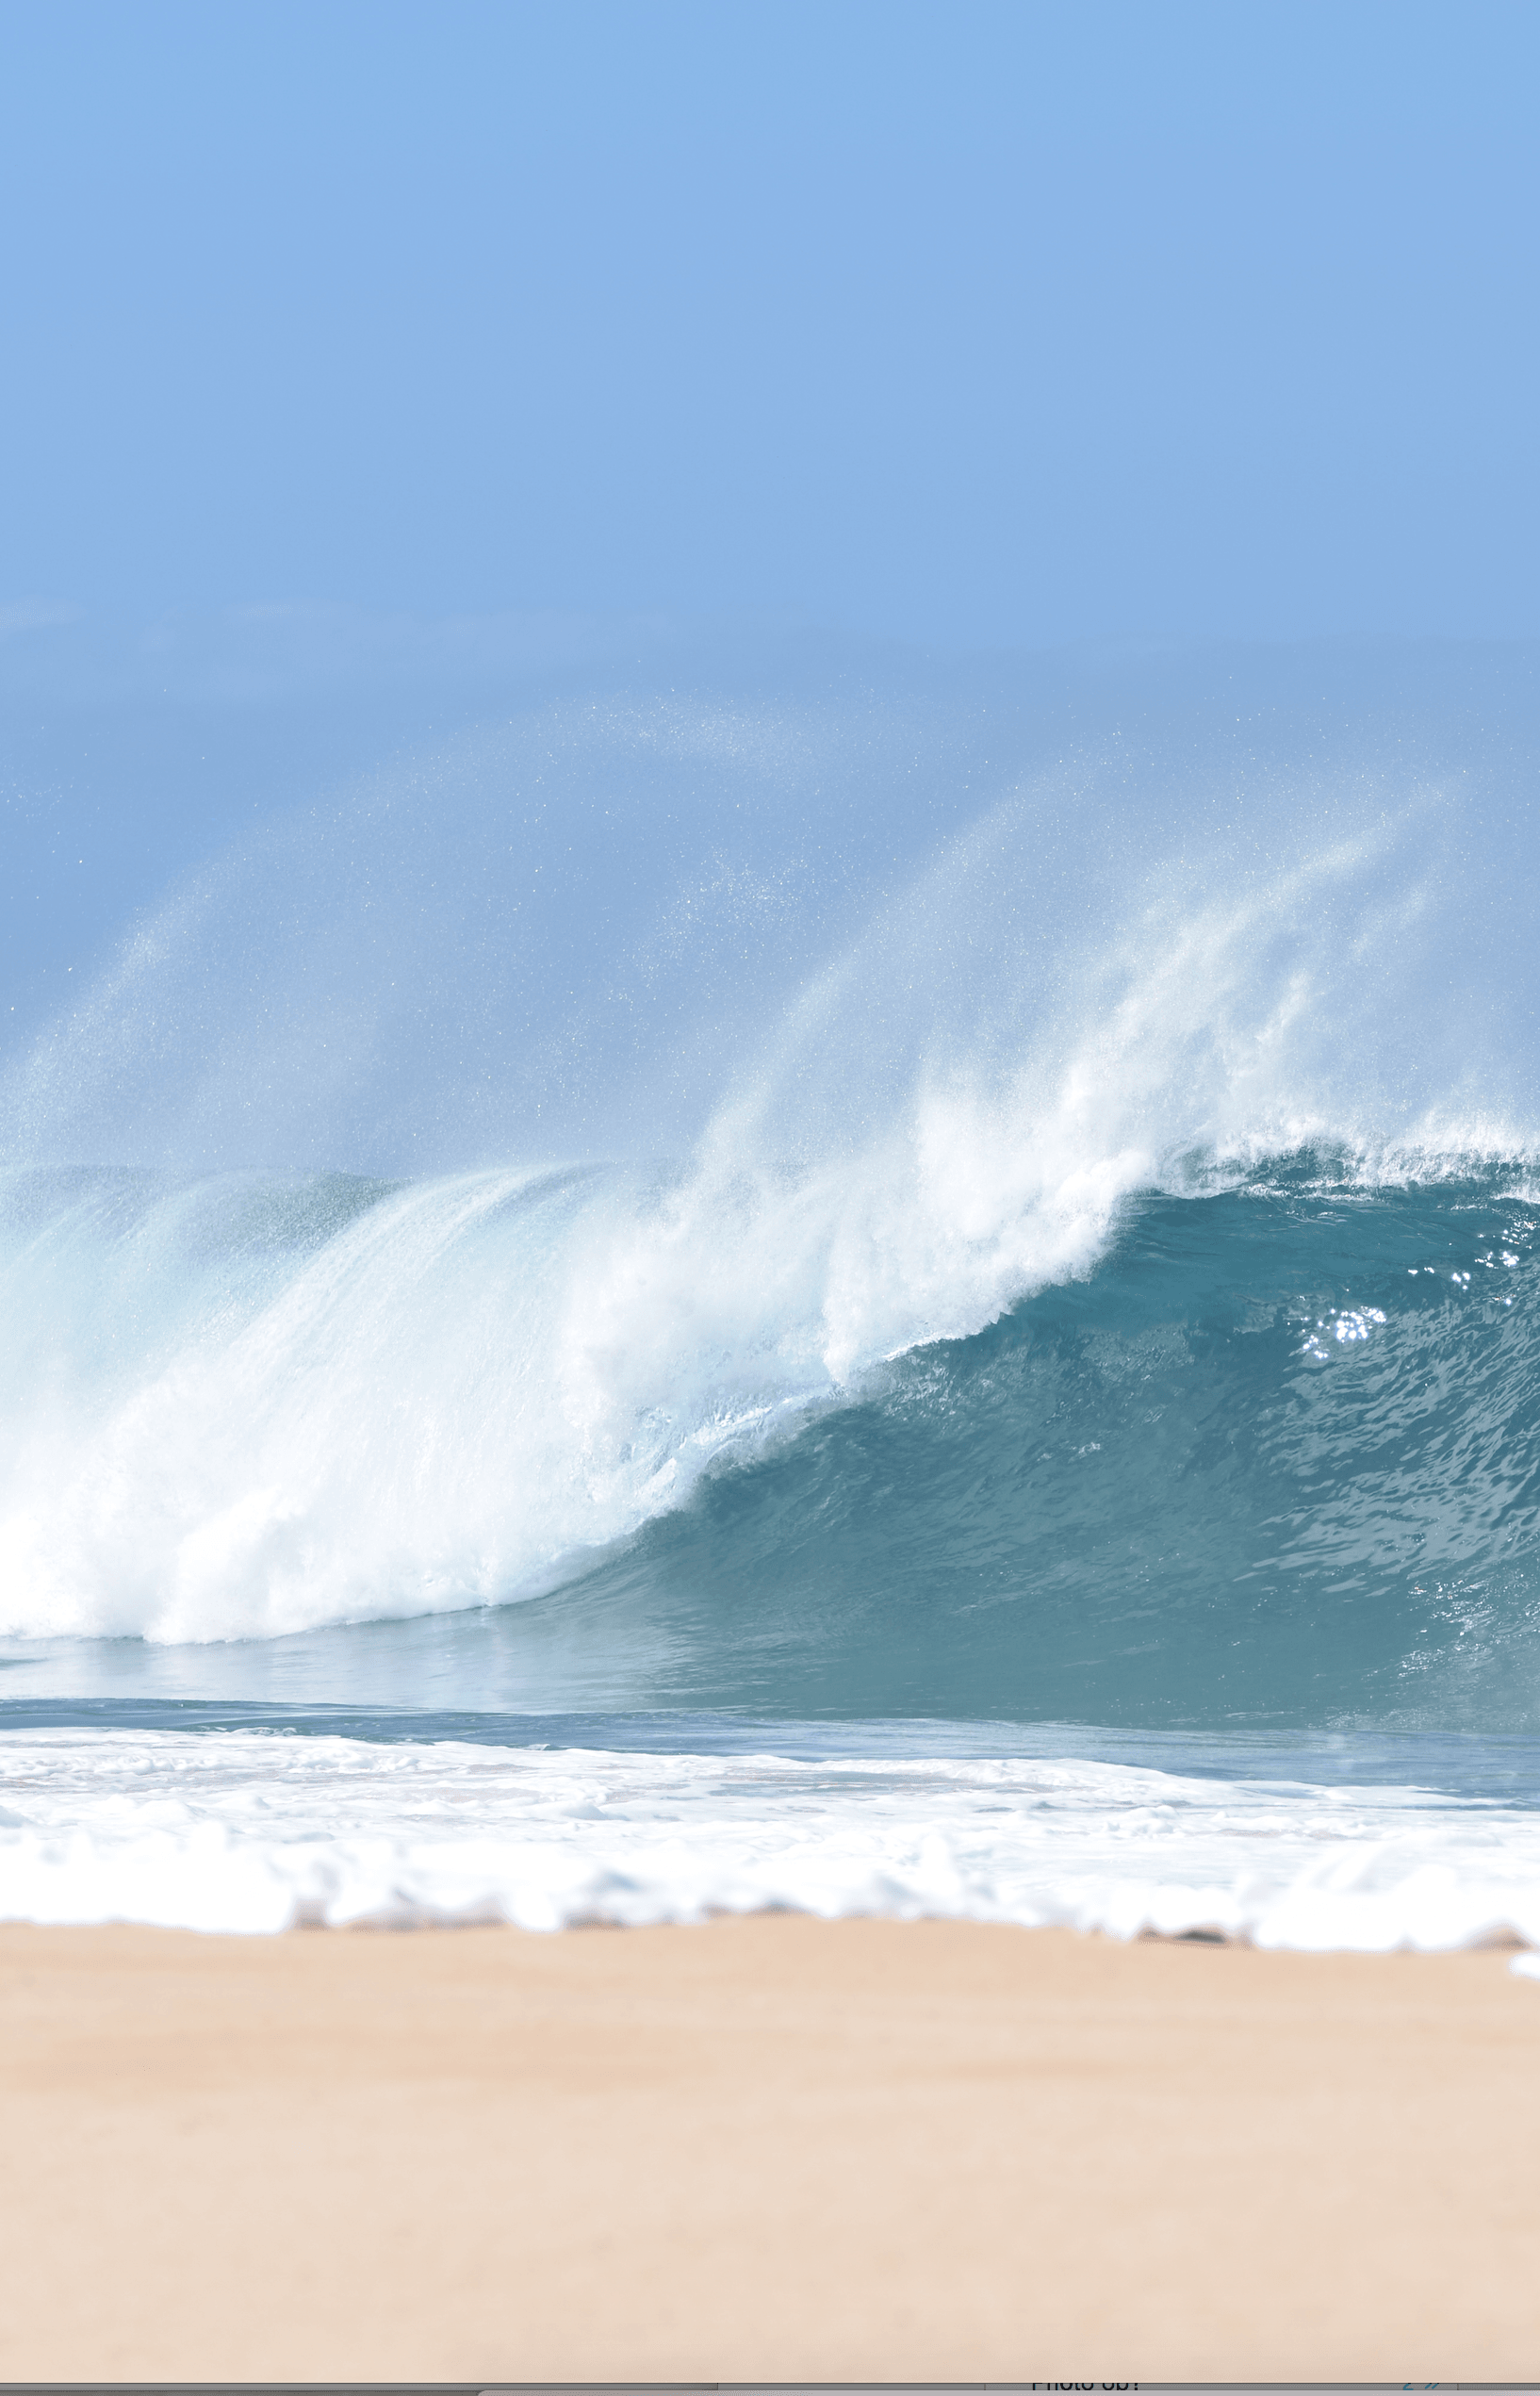 North Shore Hawaii Waves At Waimea Bay - North Shore Waves - Haleiwa Hawaii - Waimea Bay Waves - Waves At North Shore - Winter Waves Hawaii - Oahu Surf Waves - North Shore Oahu Waves - North Shore Hawaii Waves - North Shore Surf Report - North Shore Surf - Oahu North Shore Wave Height - North Shore Hawaii Surfing - Surfing North Shore Oahu #hawaii #oahu #surf